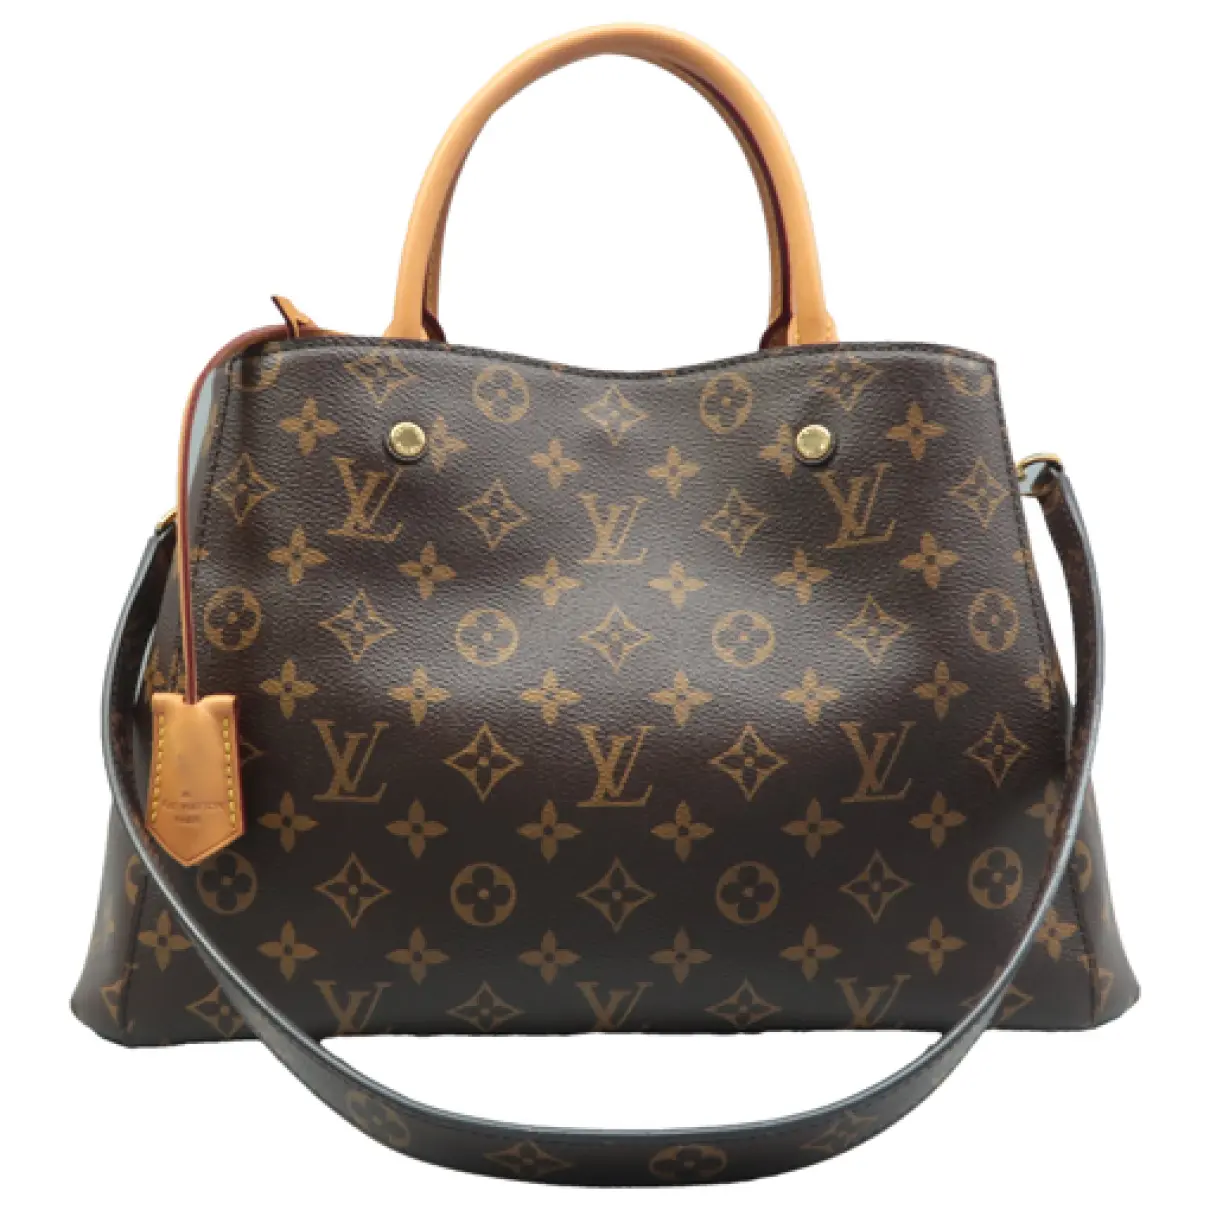 Montaigne leather satchel Louis Vuitton